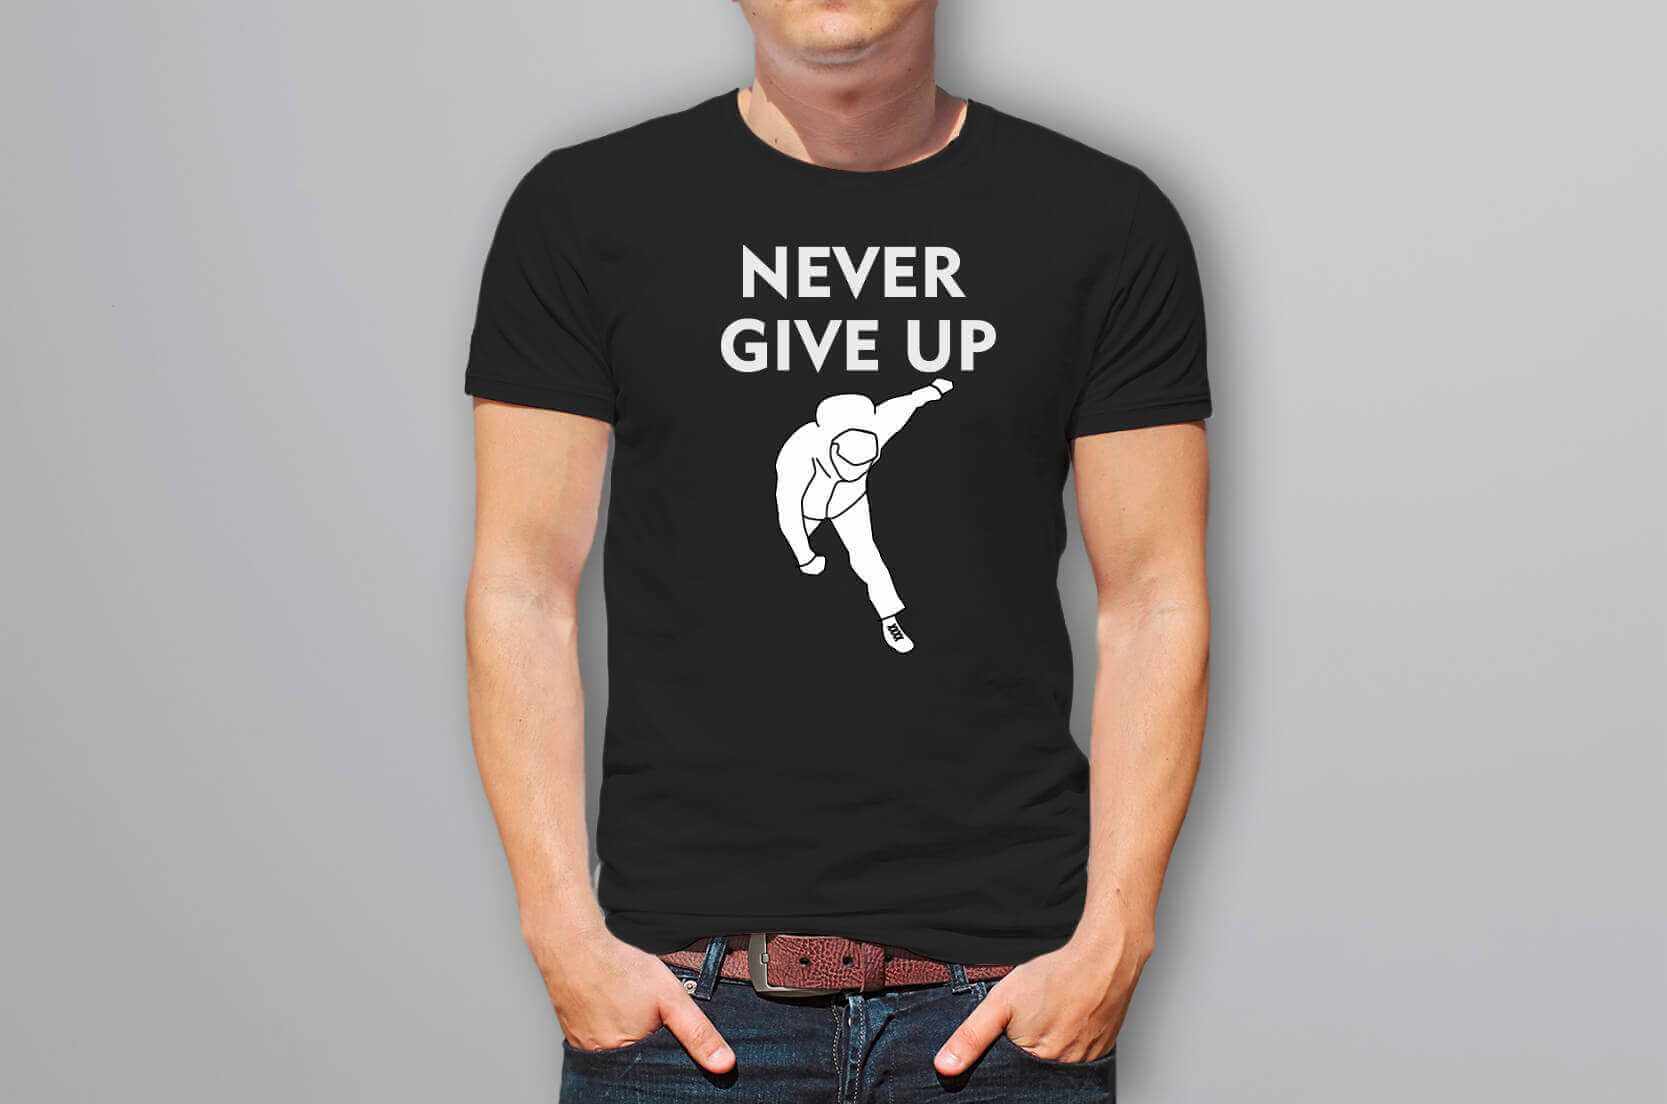 柯P Never give up跌倒T恤-黑色款的第2張圖(客製化公司制服、班服製作、團體服製作等示意或作品圖)